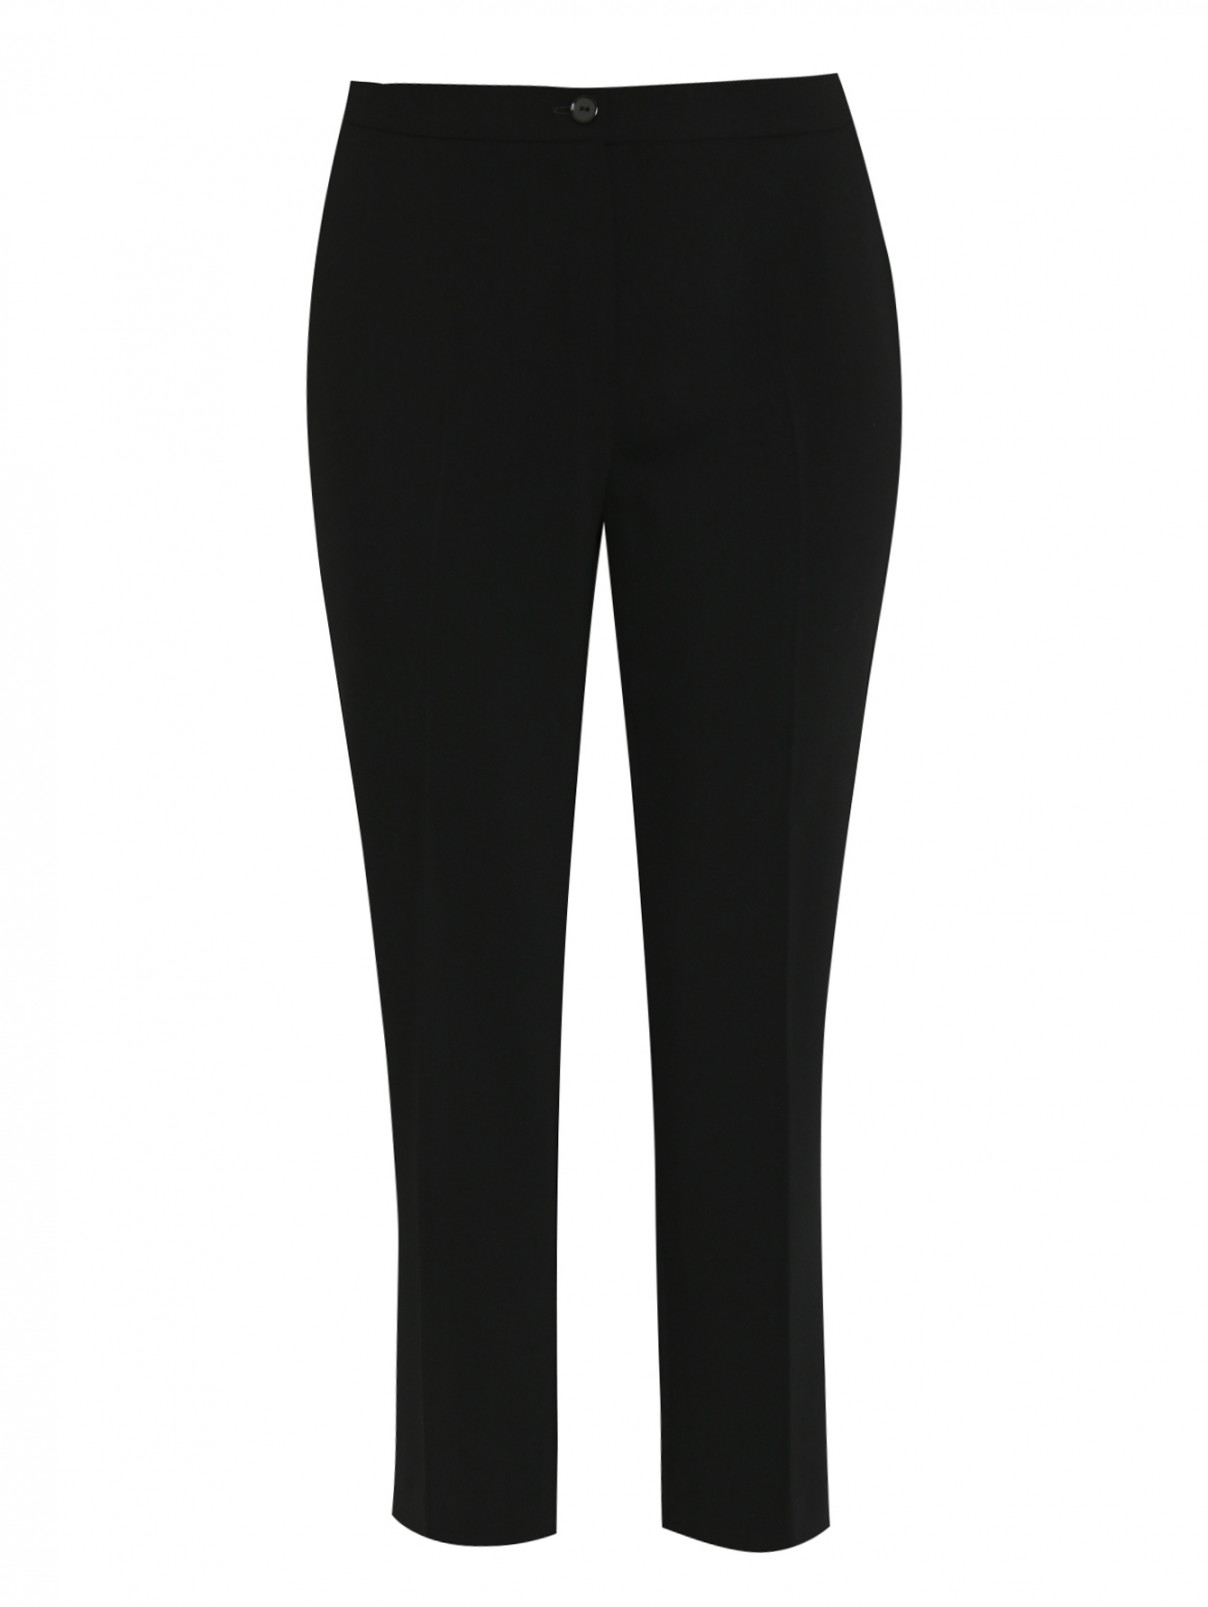 Укороченные брюки со стрелками Persona by Marina Rinaldi  –  Общий вид  – Цвет:  Черный